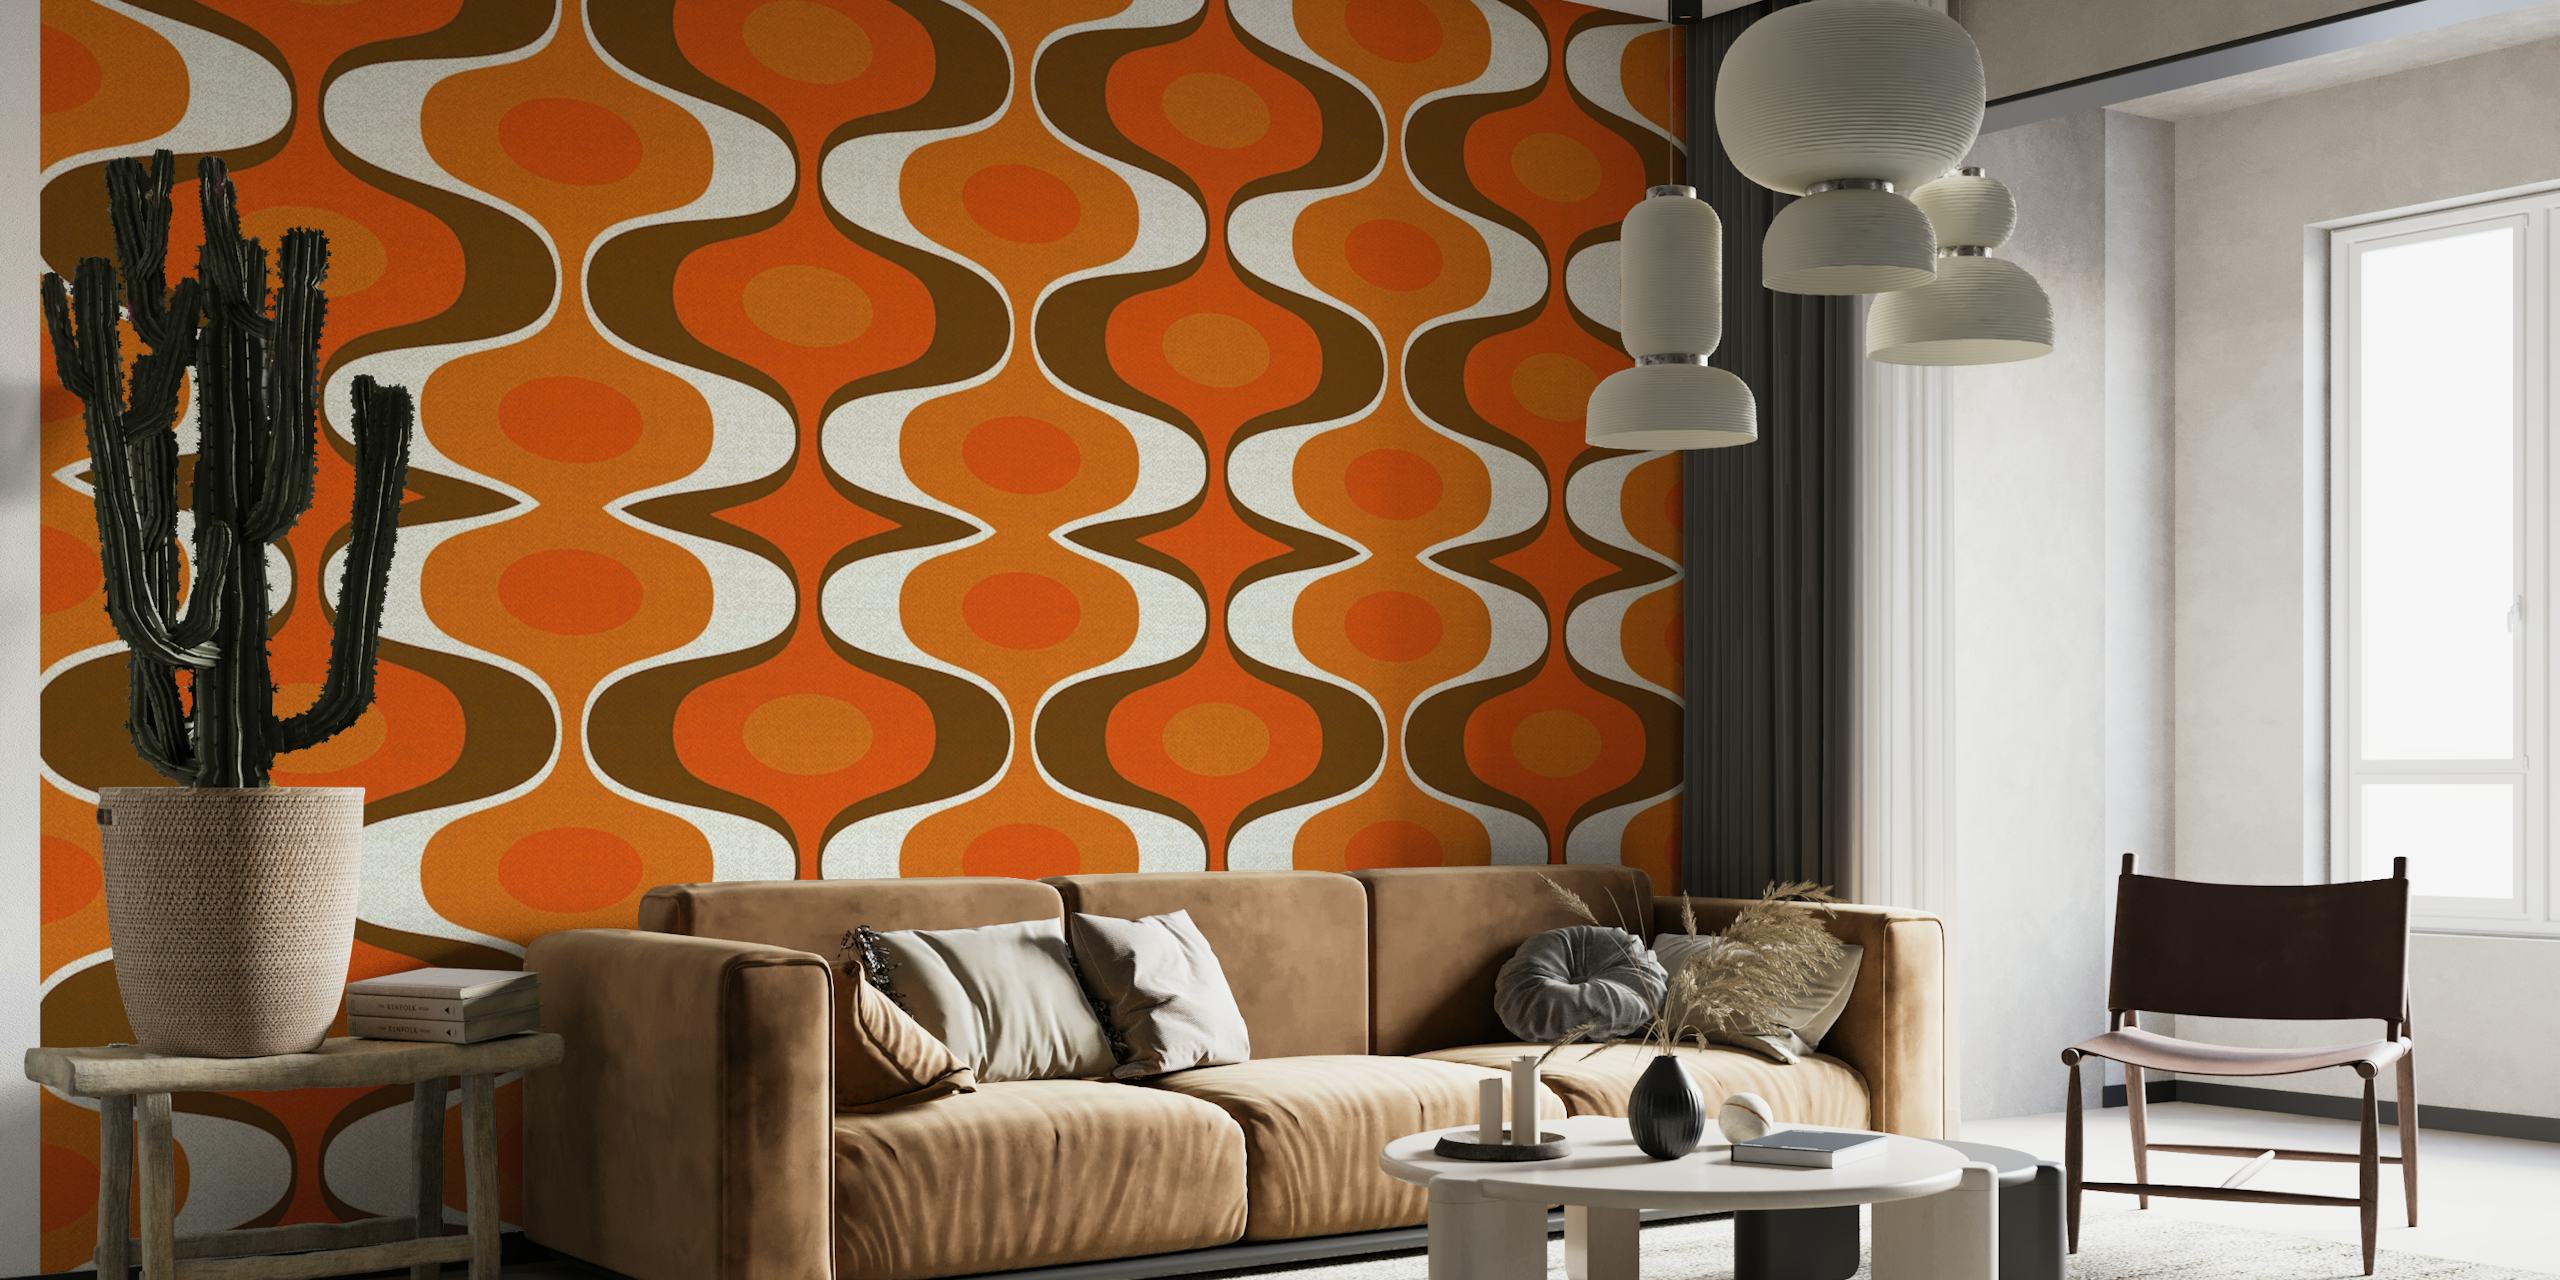 Papier peint mural d'inspiration vintage avec un motif rétro groovy des années 70 dans des couleurs orange et marron.